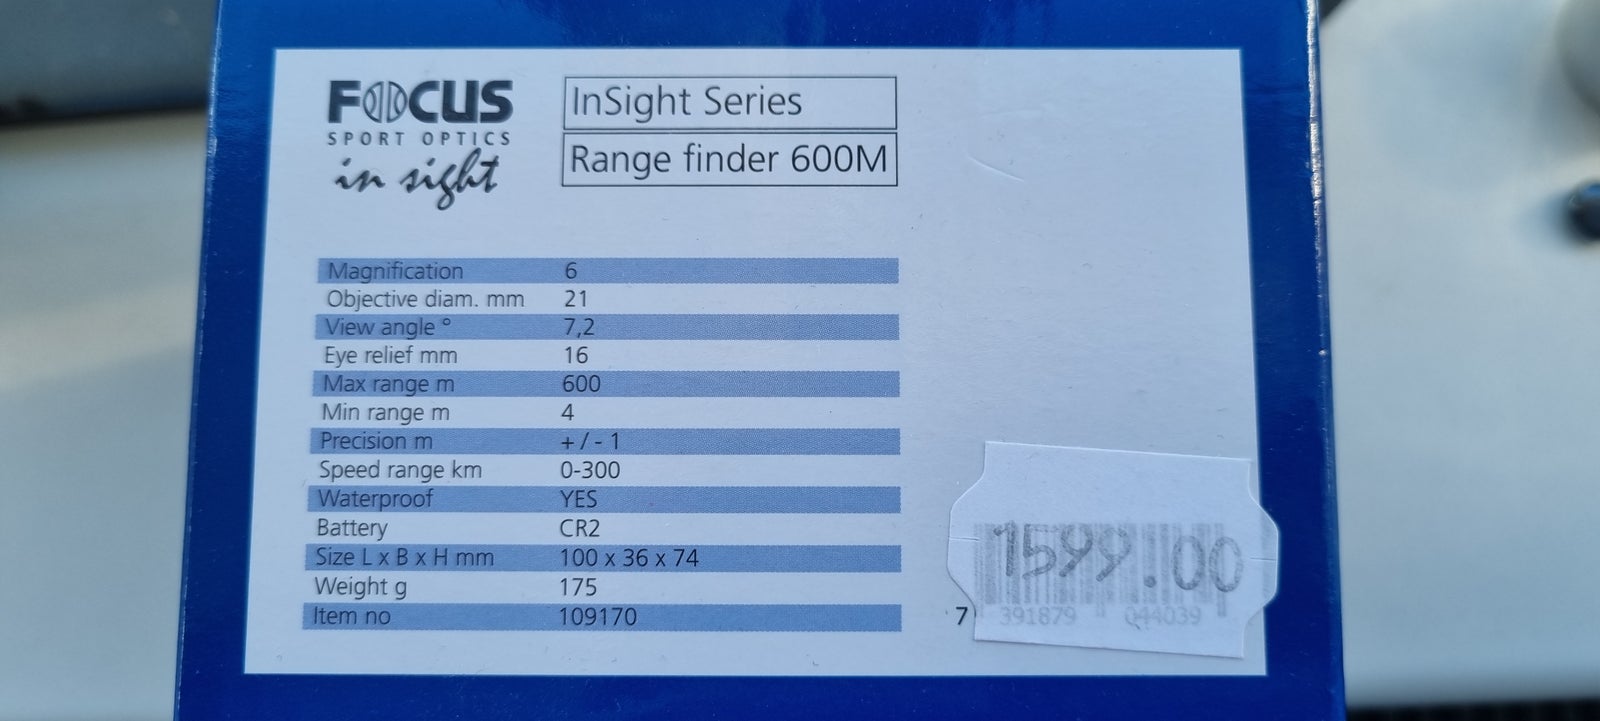 Range finder 600m, Focus sport optics, In sight 600M